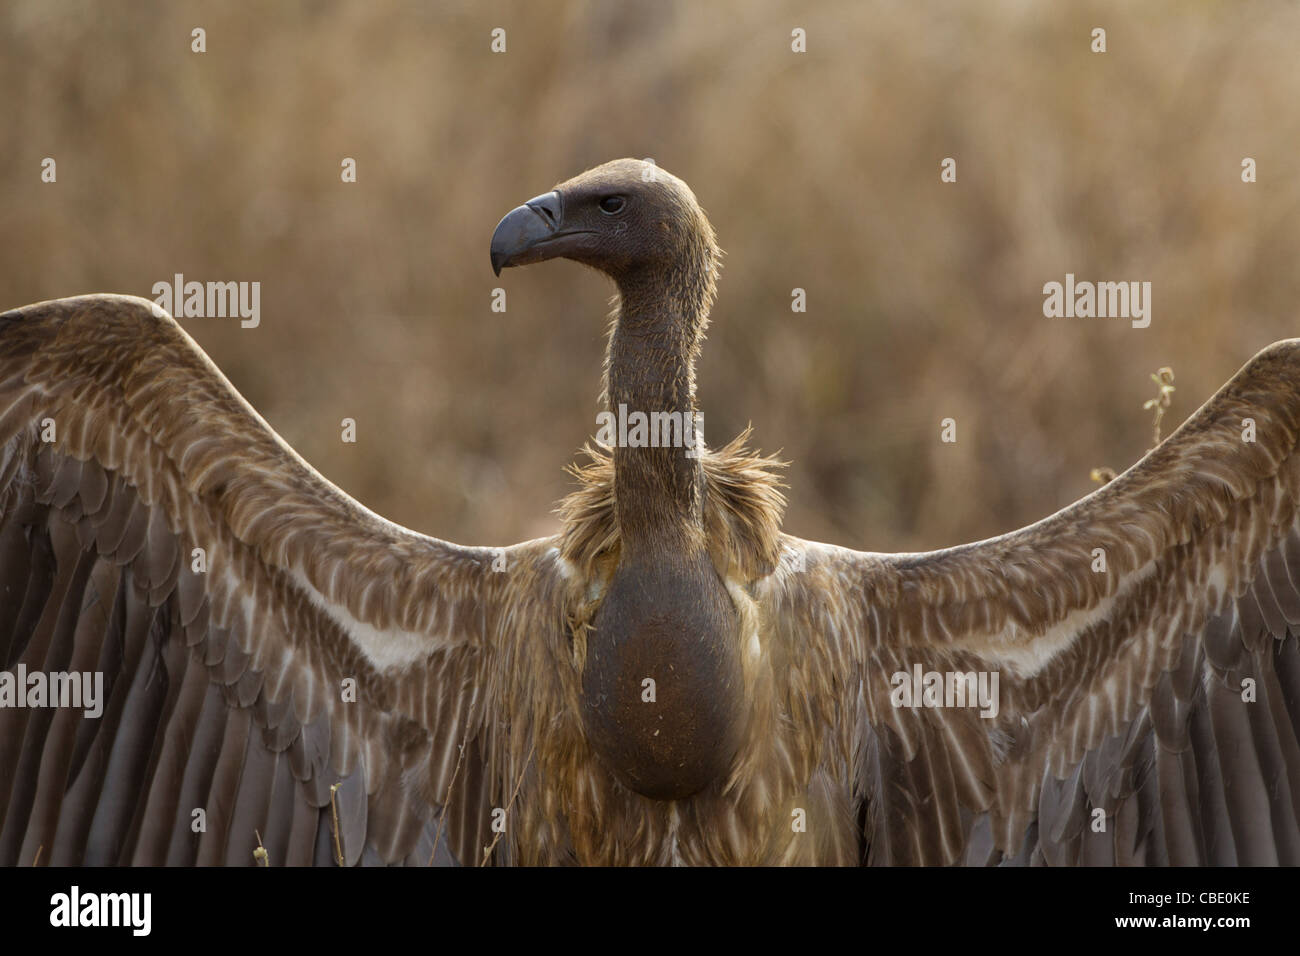 Diese erstaunliche Vögel haben eine der besten Auge Sehenswürdigkeiten der Welt. Stockfoto